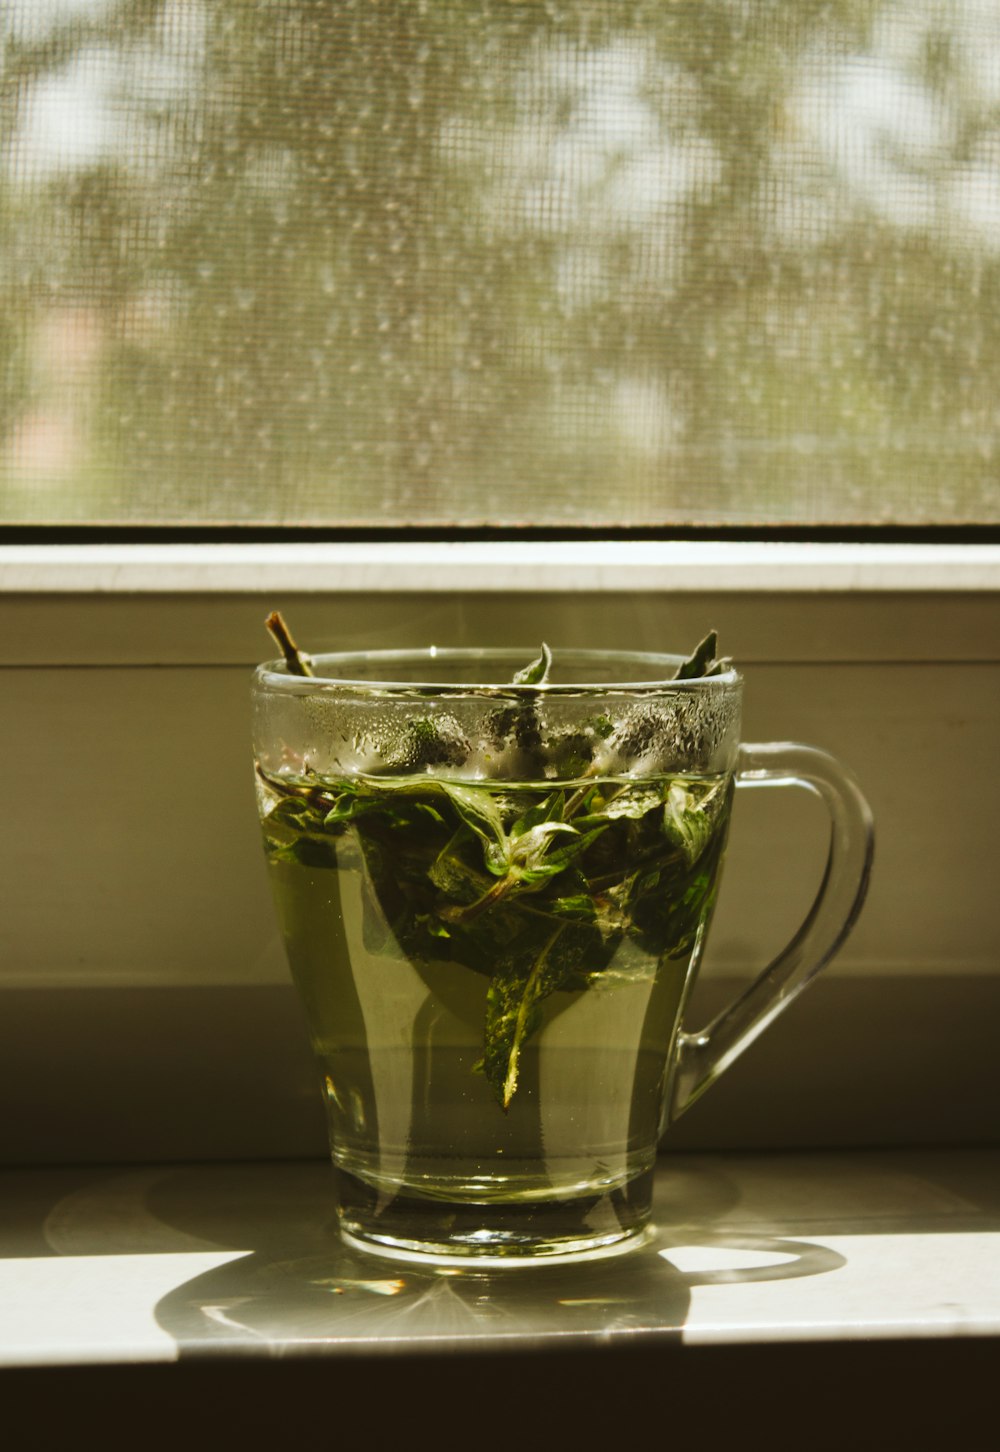 green leaf in clear glass mug